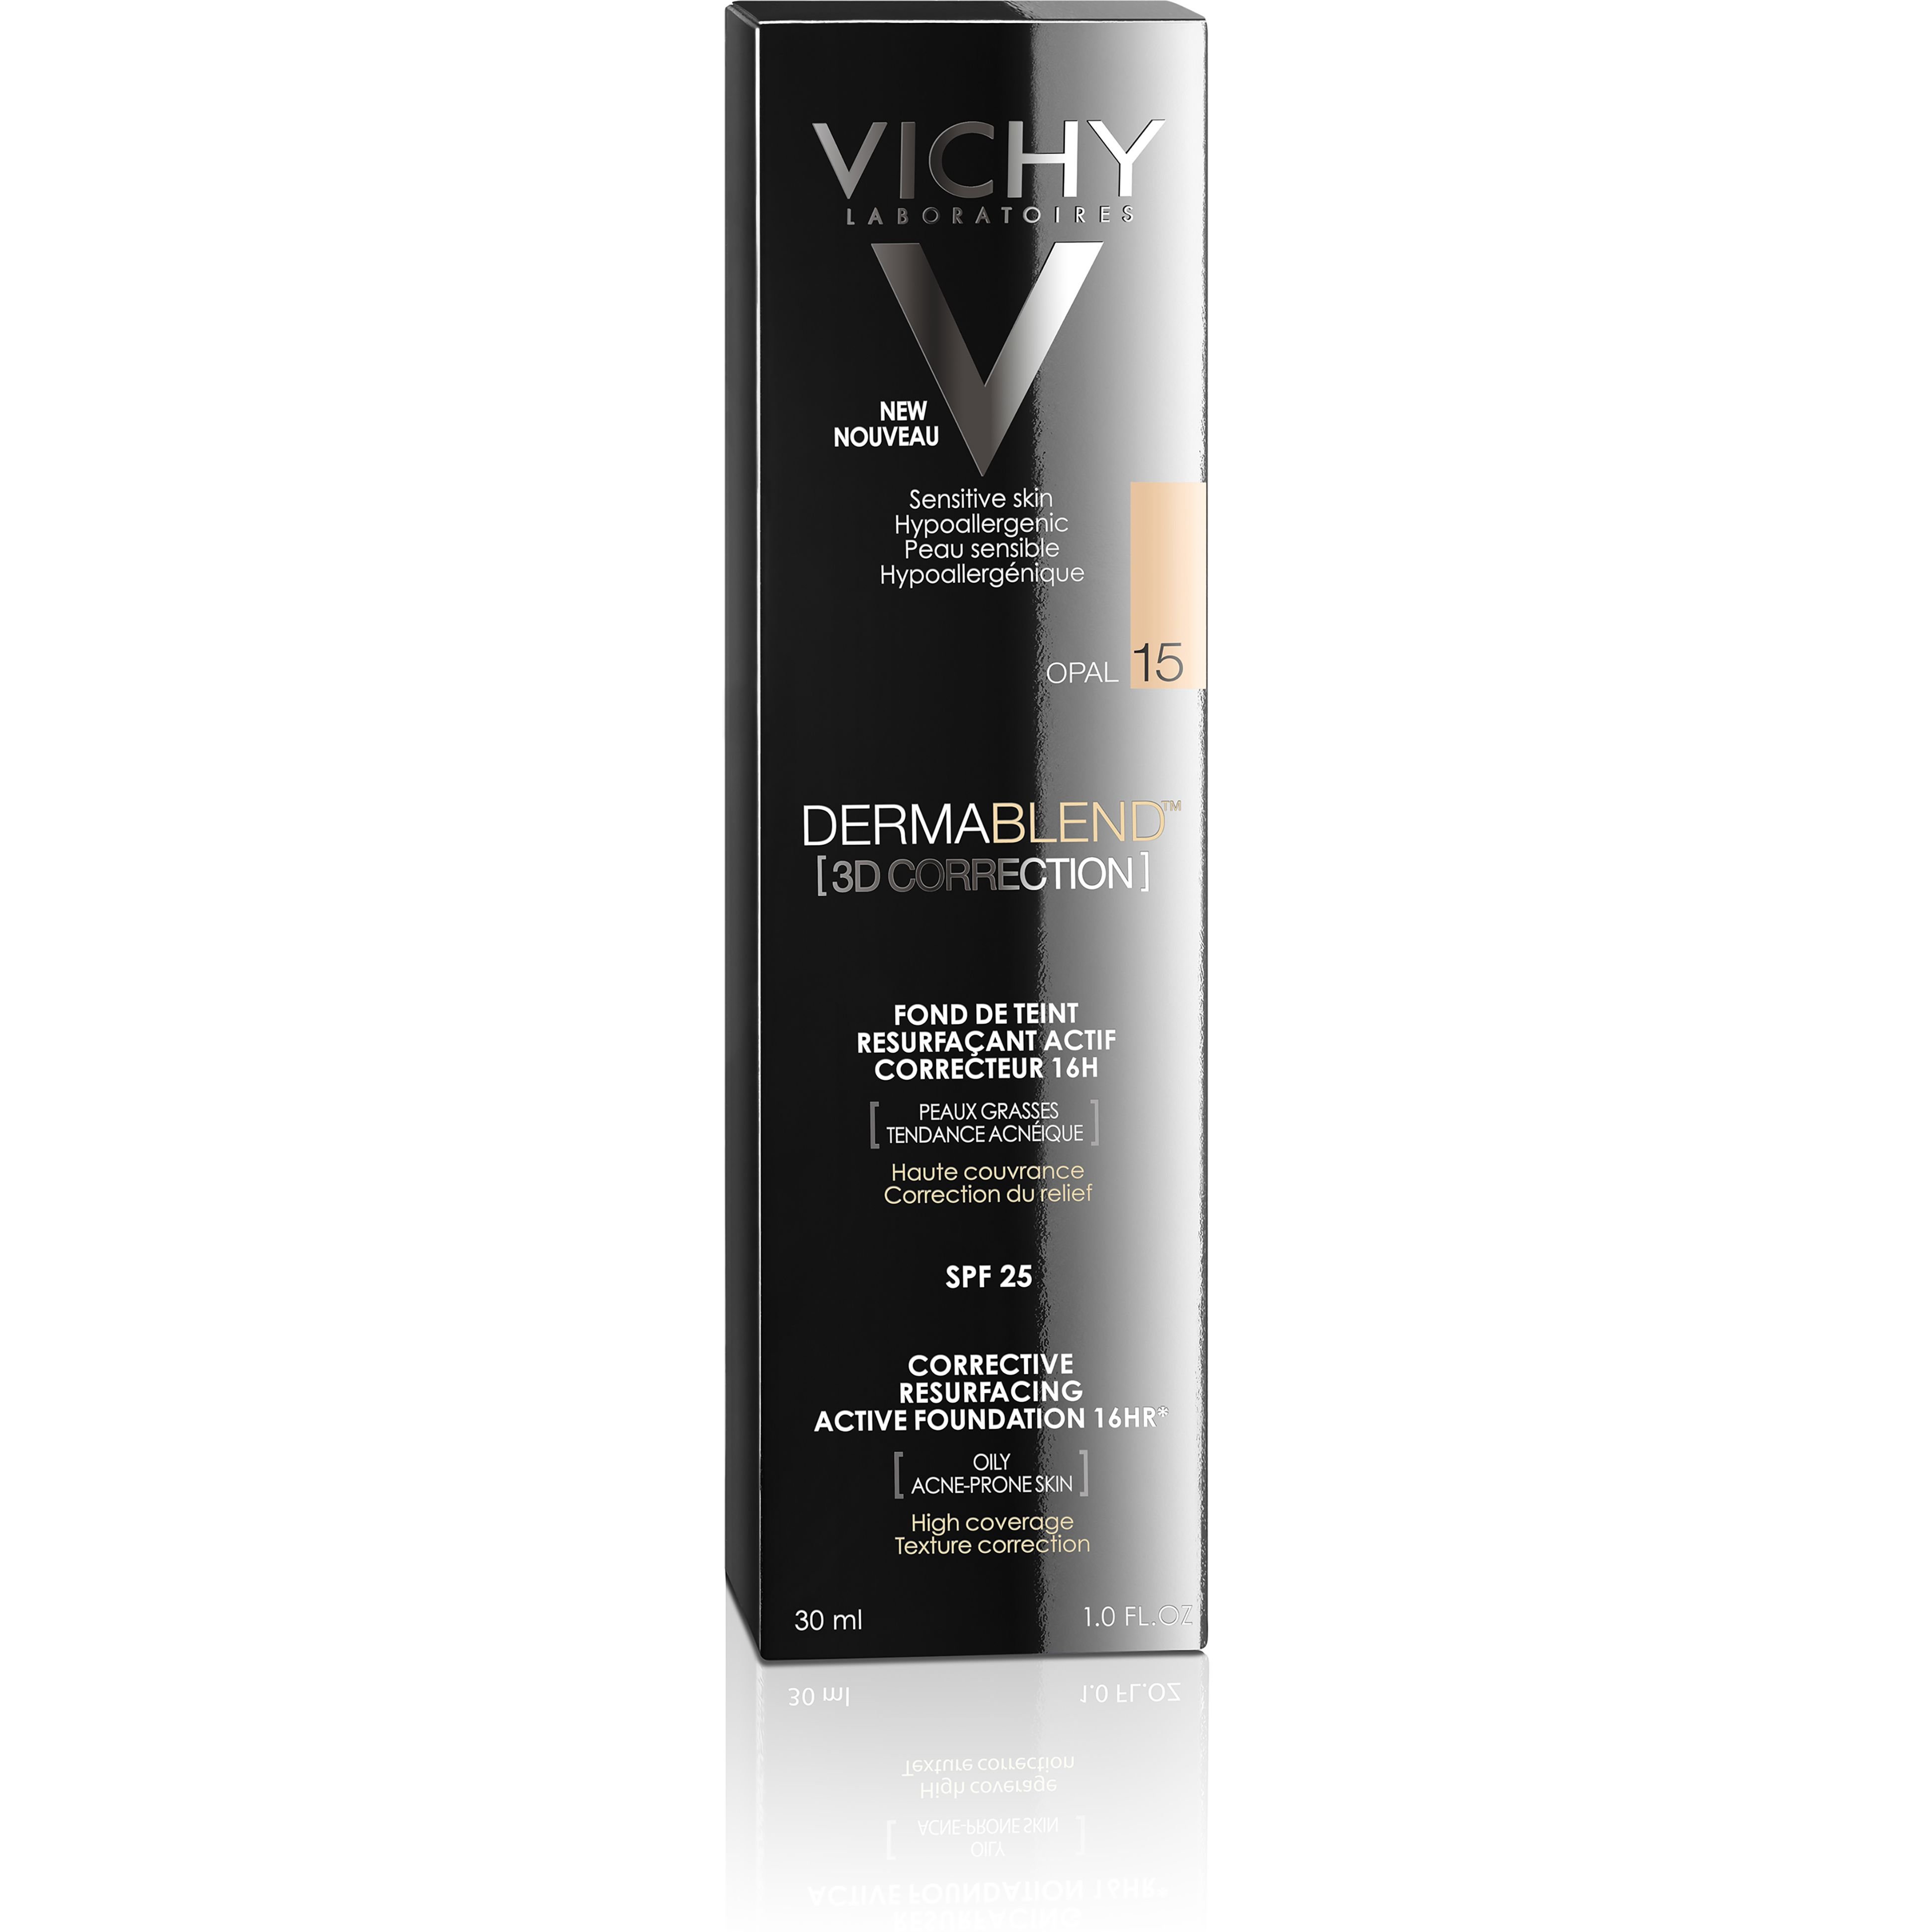 Матирующий тональный крем Vichy Dermablend 3-D, для выравнивания поверхности кожи, оттенок 15, 30 мл - фото 2